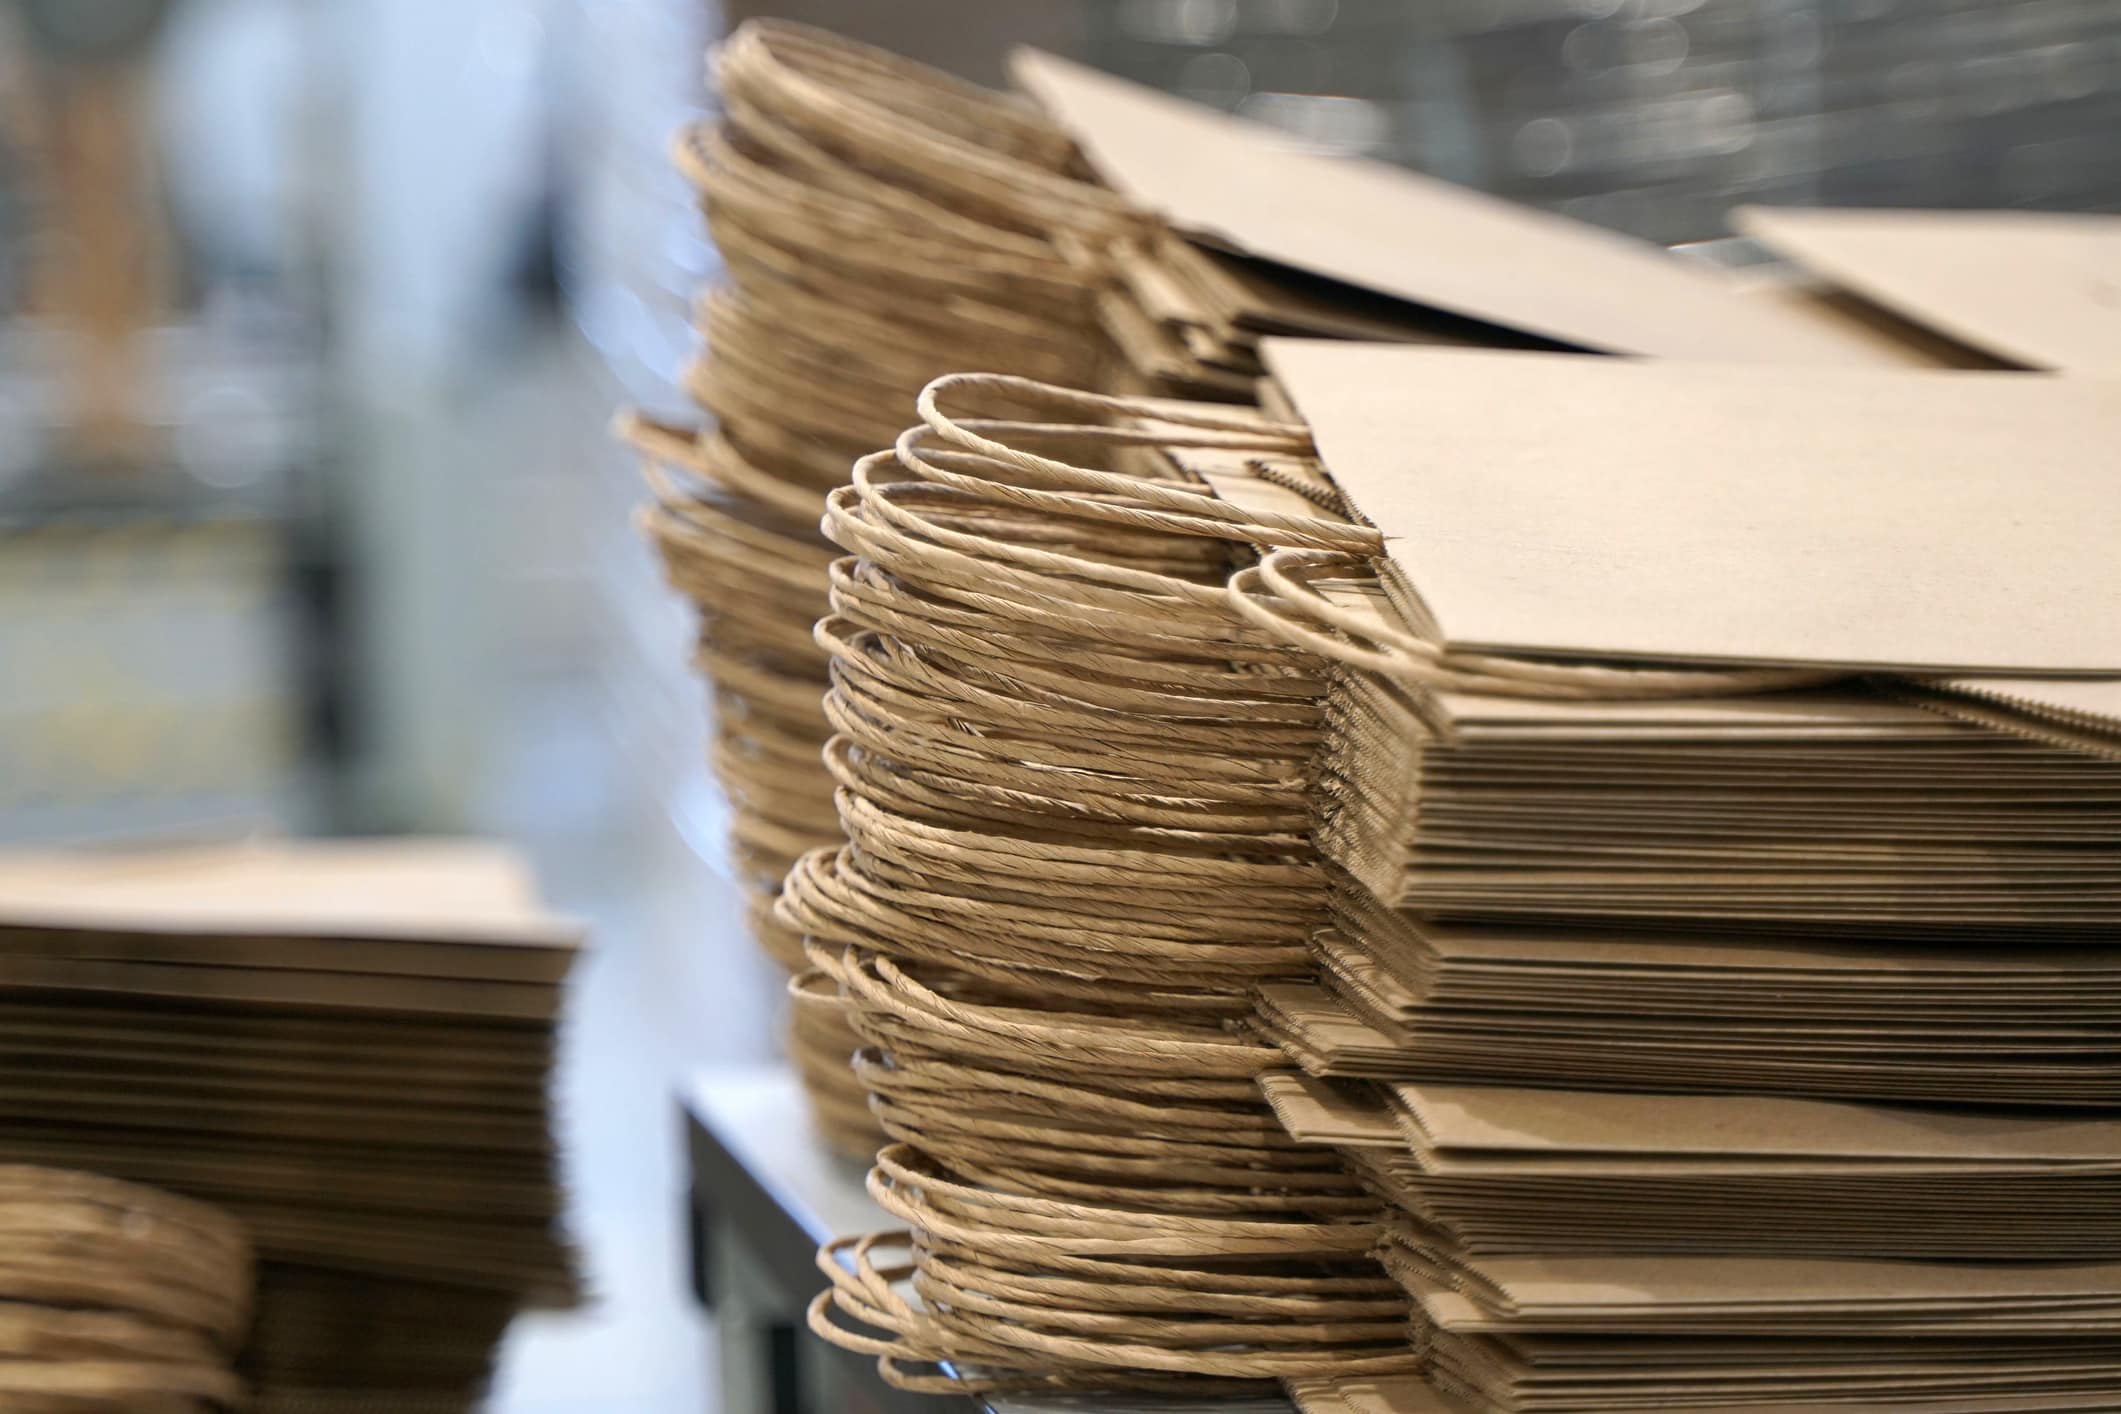 Stos papierowych toreb, produkowanych masowo dzięki Margaret Knight